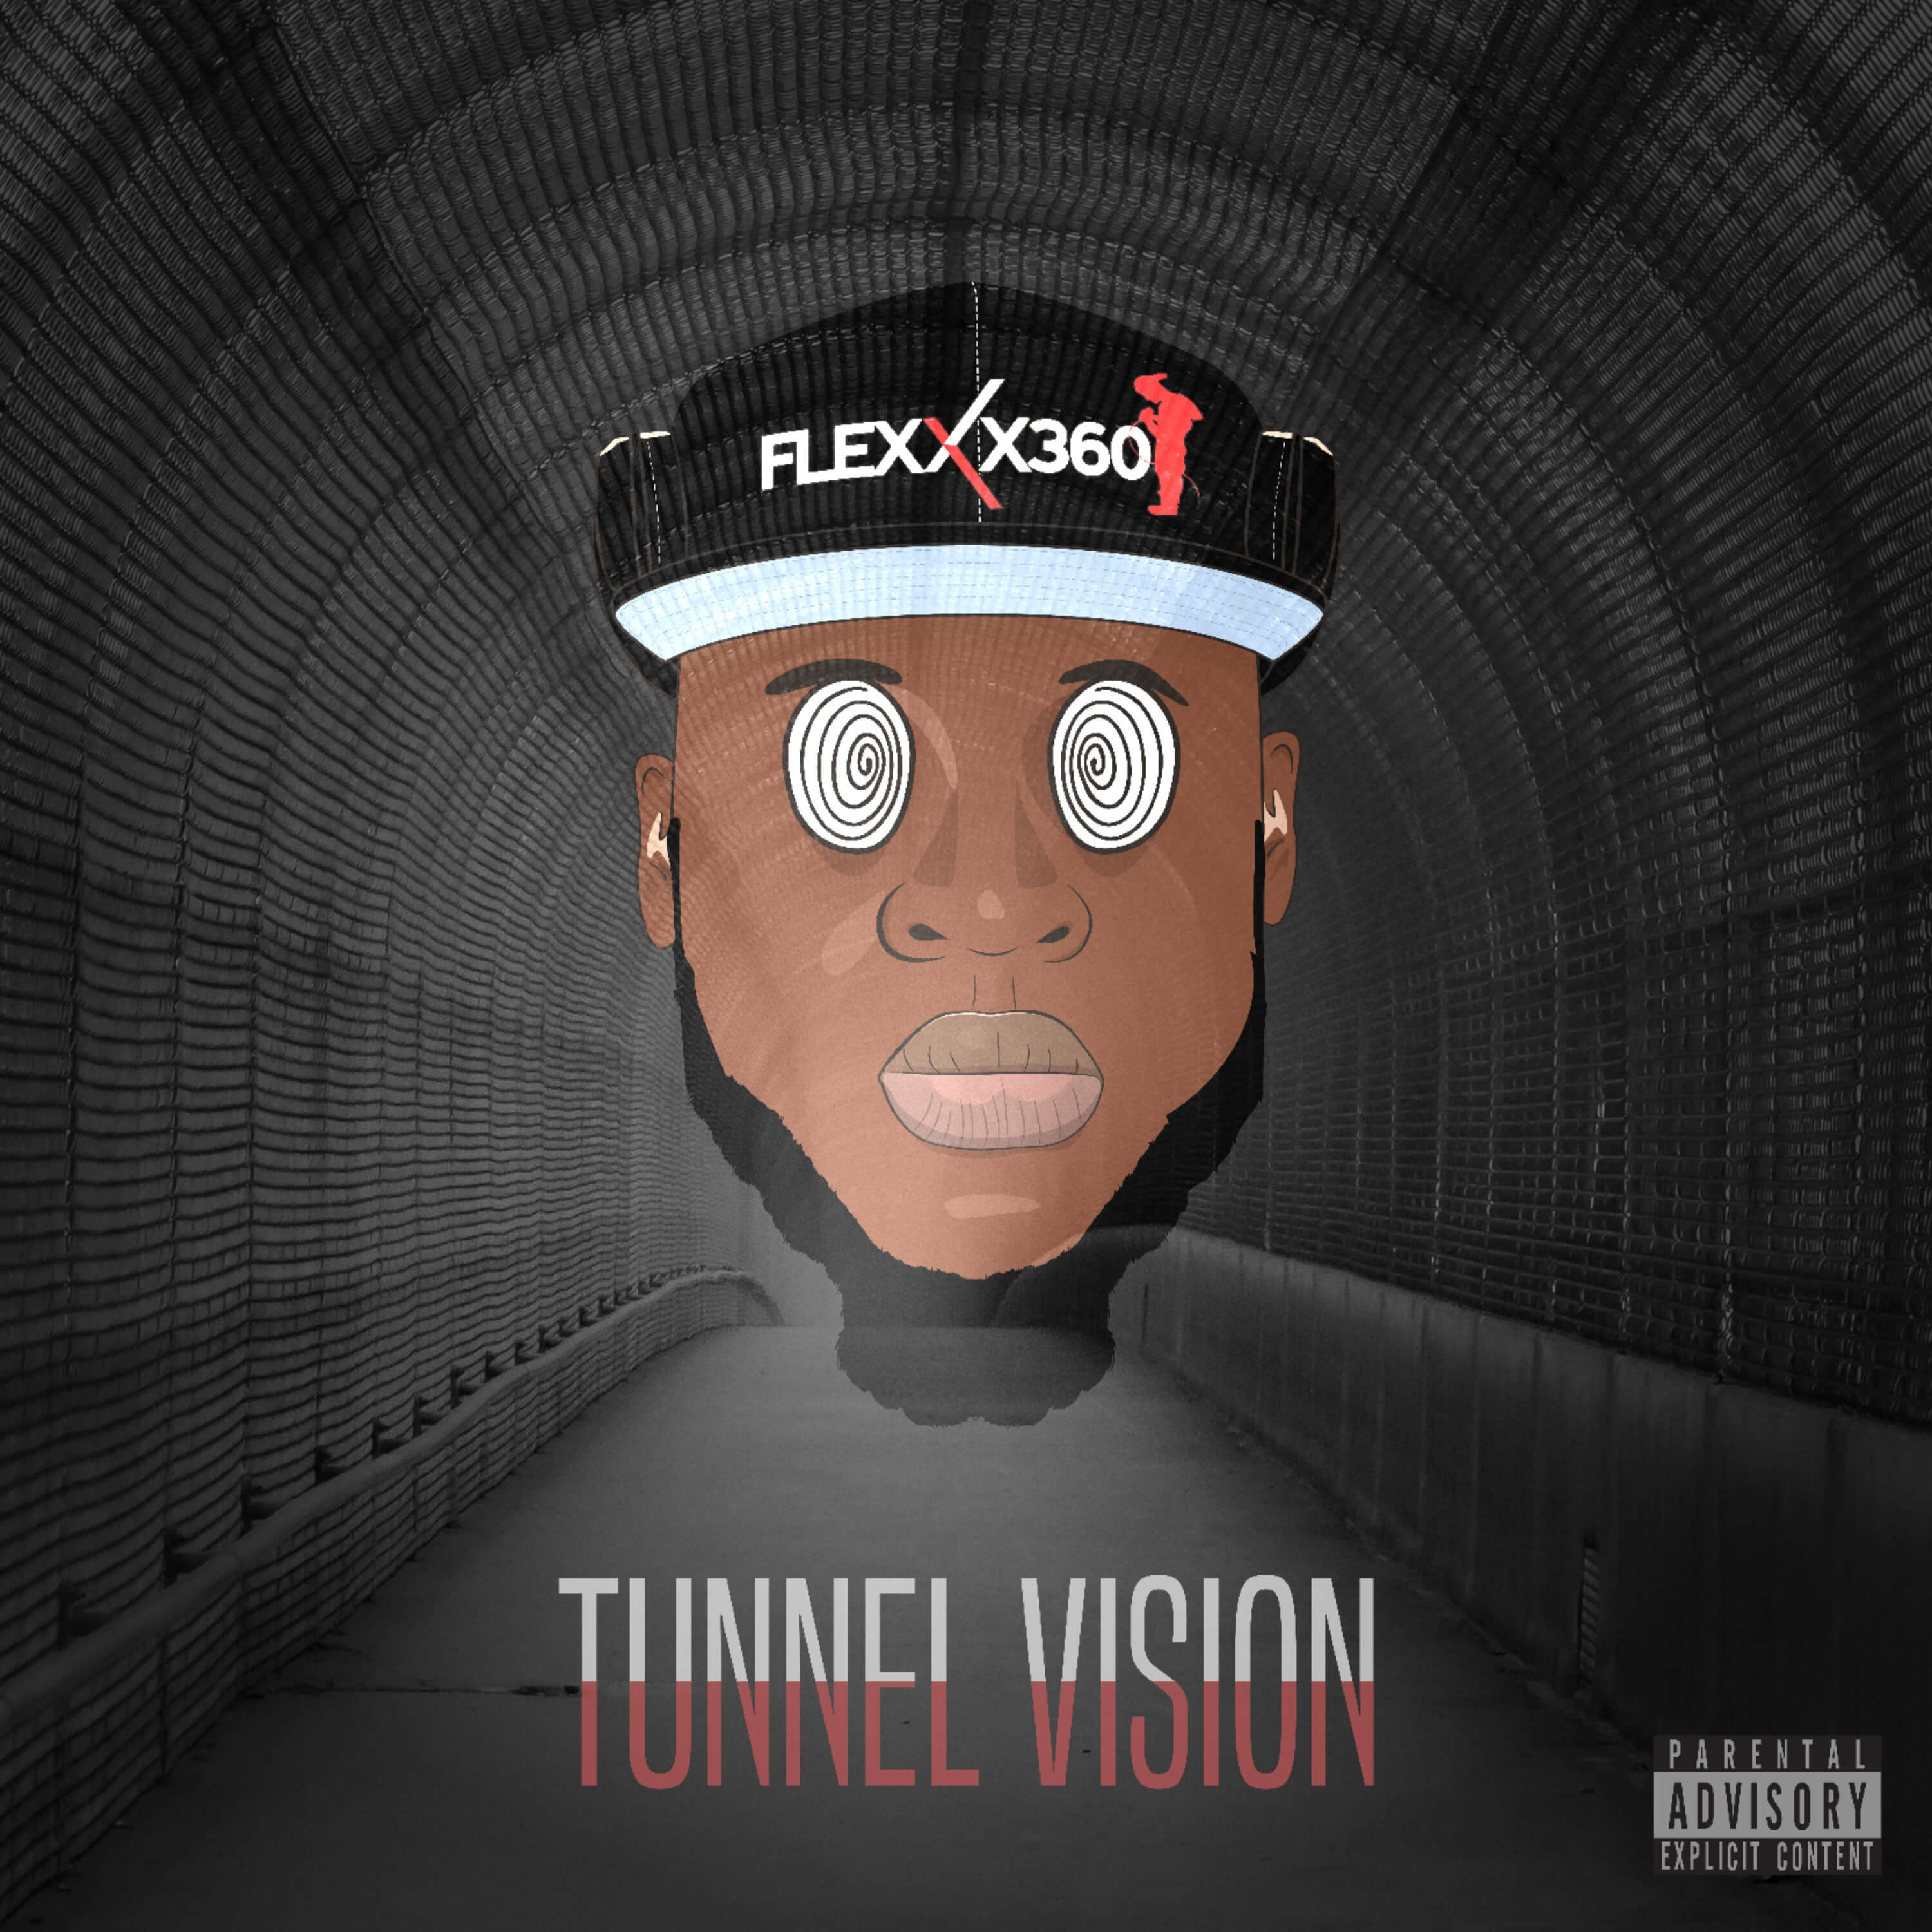 New Mixtape! Flexxx360 drops “Tunnel Vision” @flexxx_360